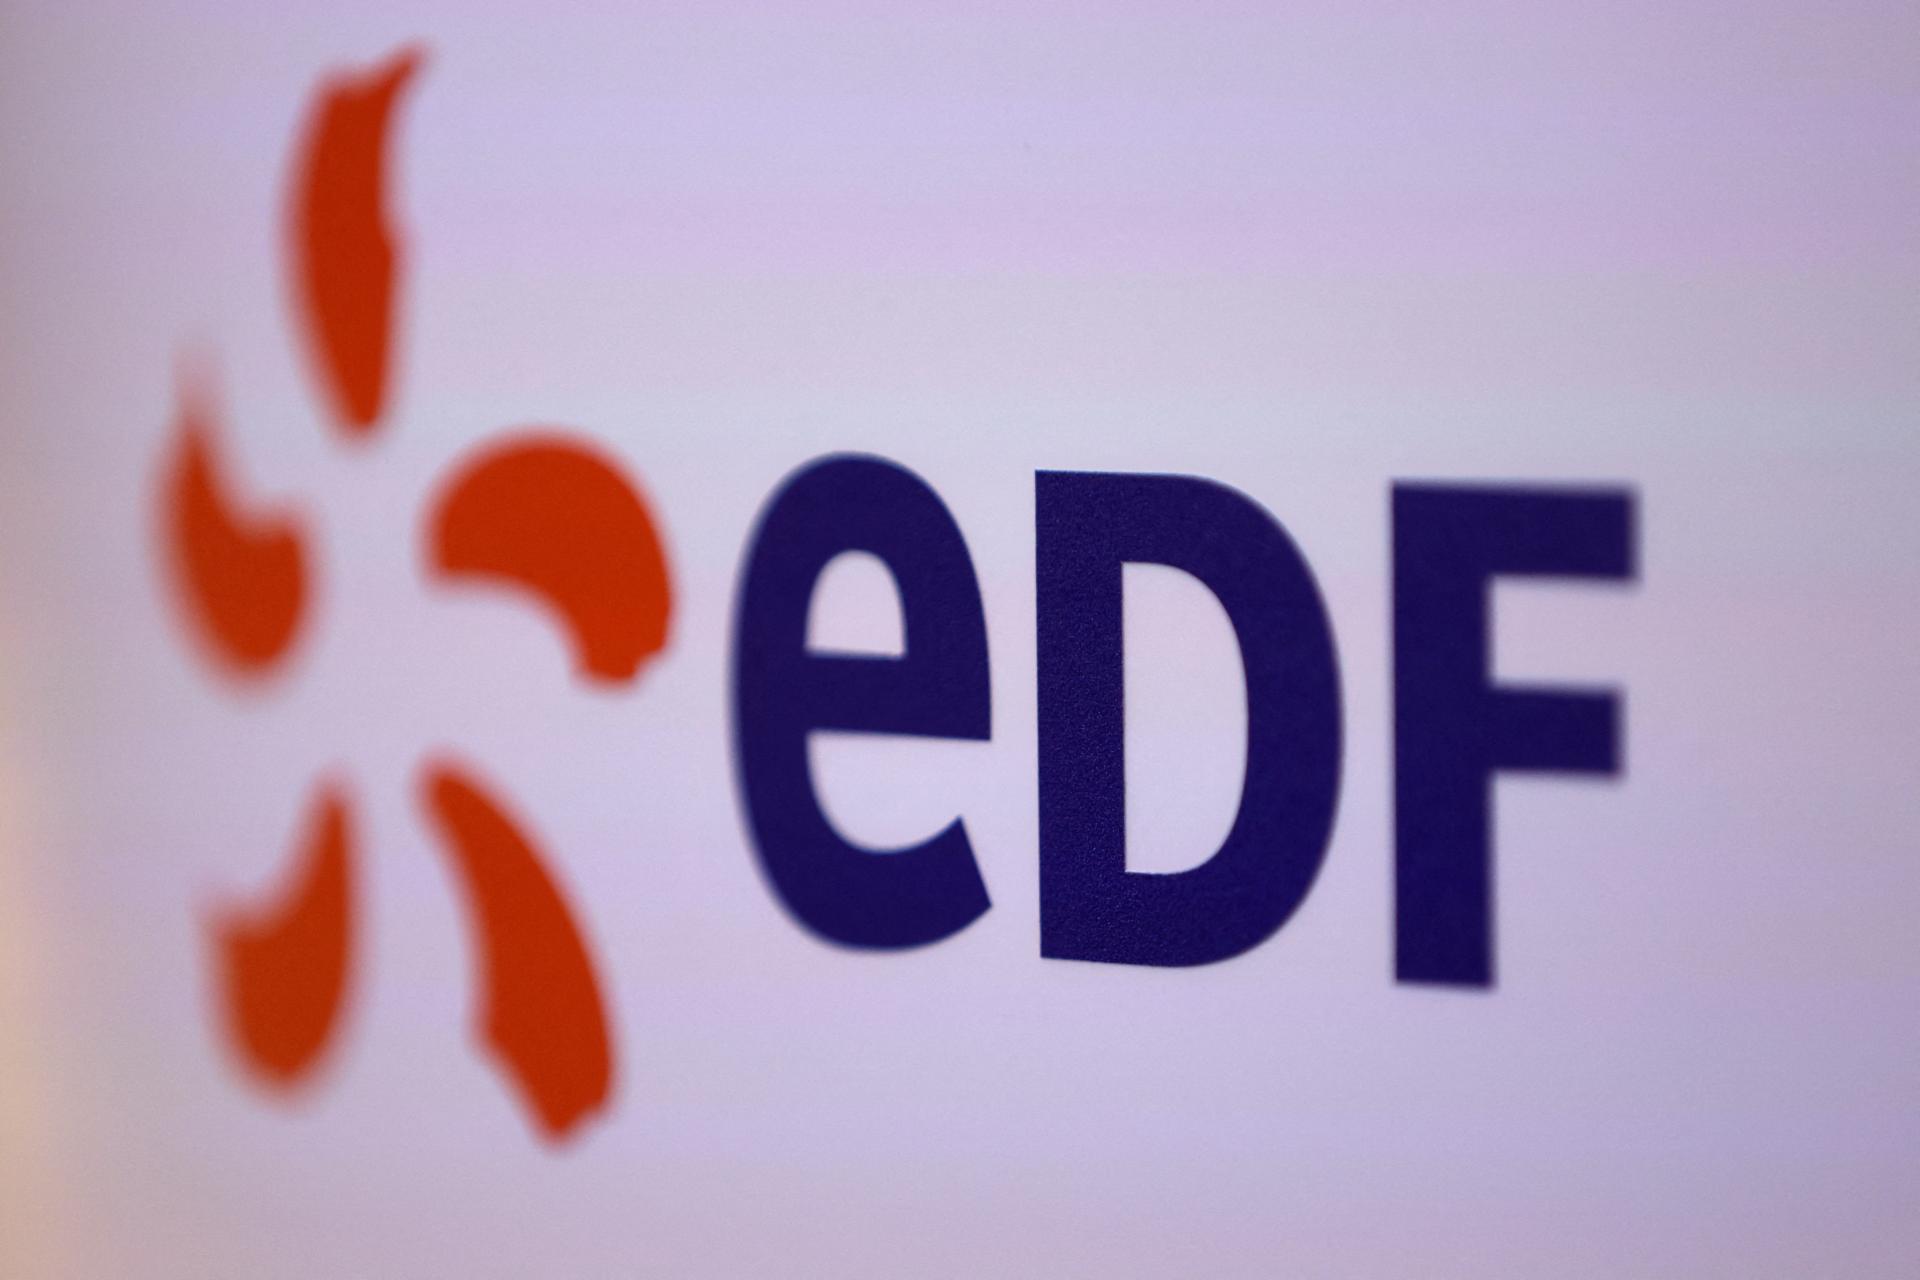 La nationalisation d’EDF se passe plus difficilement que ne le pensait Paris.  Les actionnaires minoritaires tentent de contester le prix de rachat